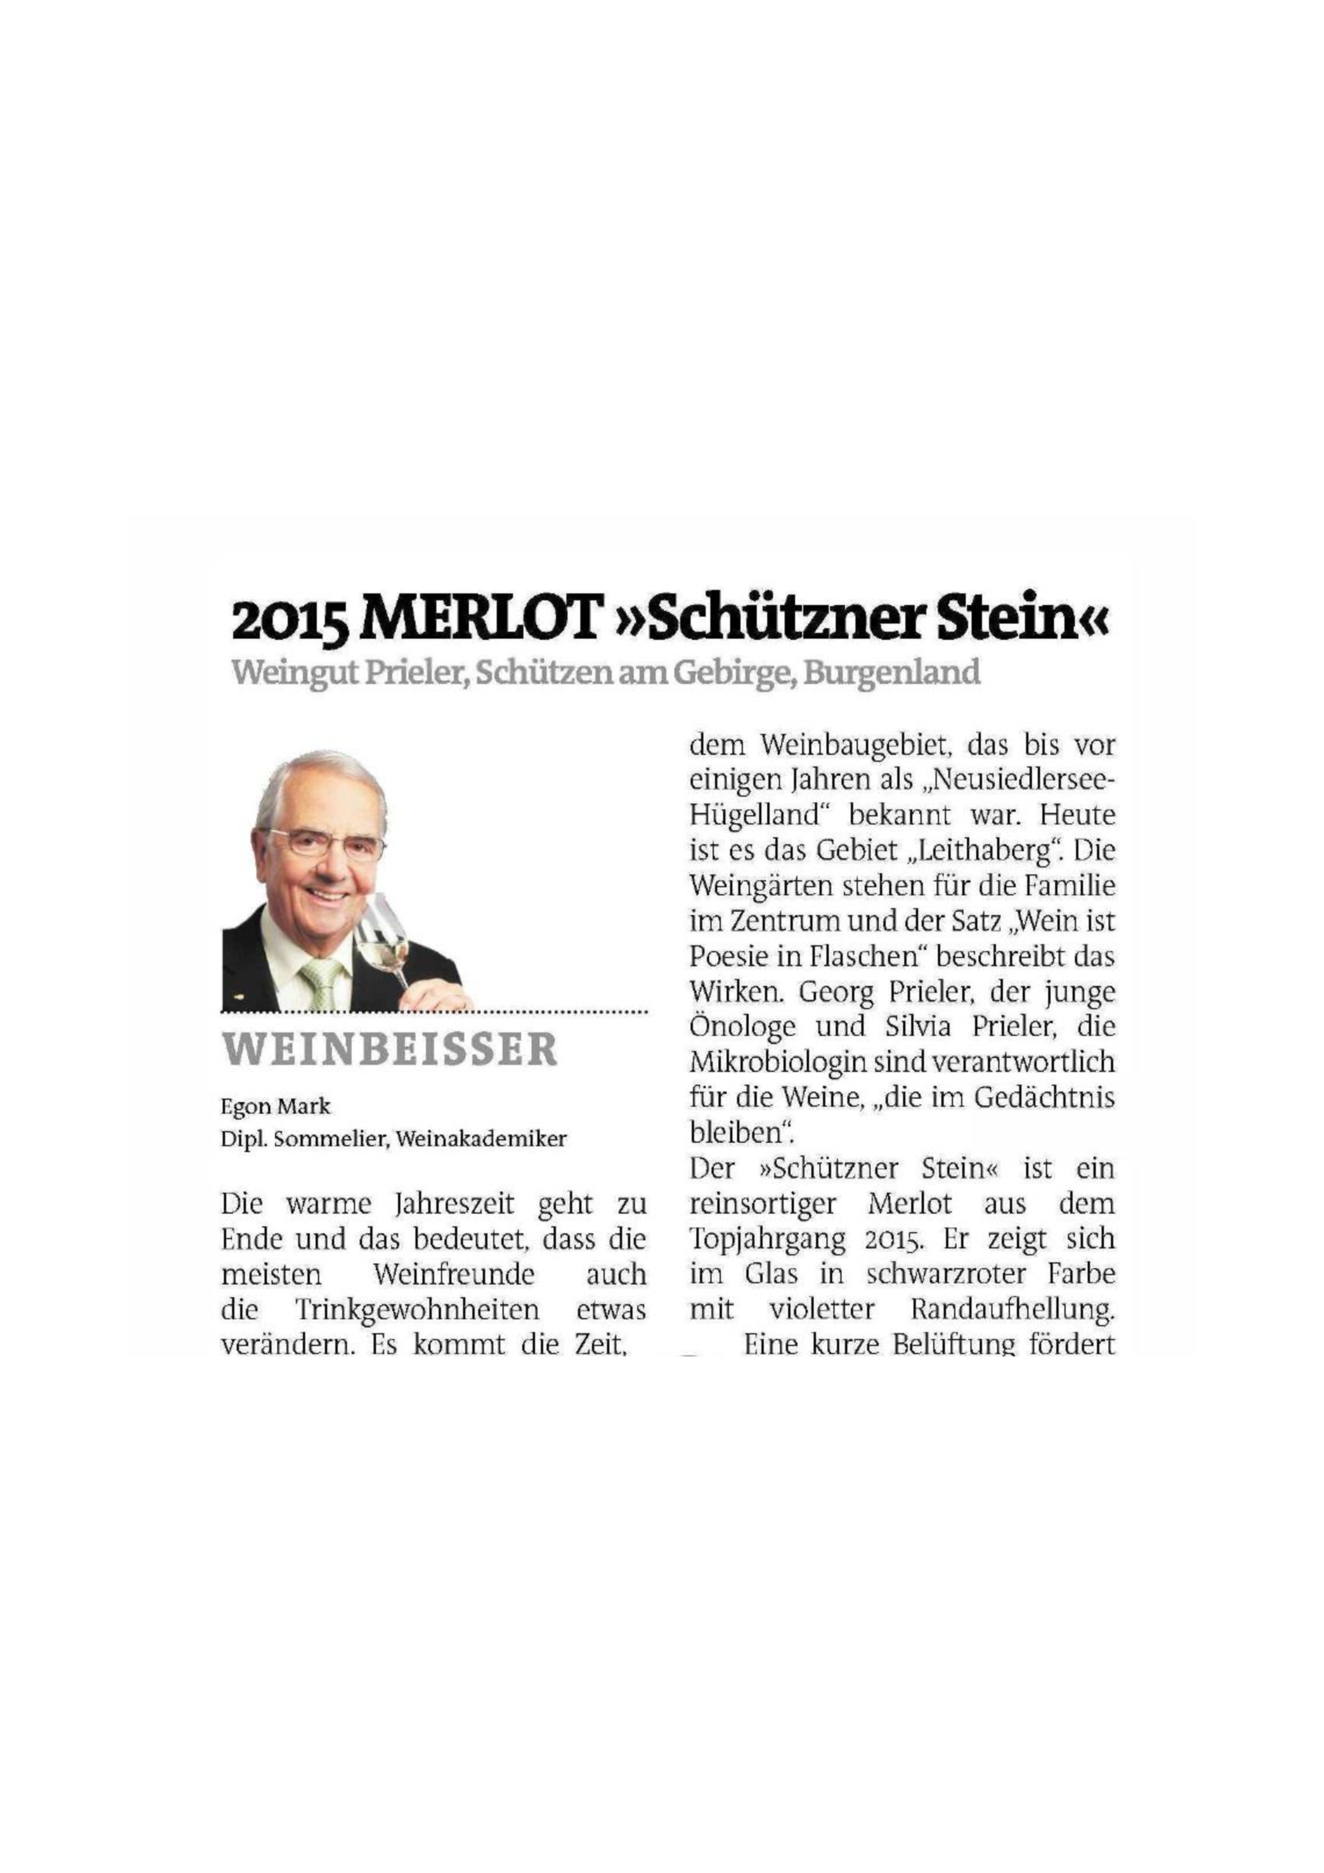 Merlot Schützner Stein 2015